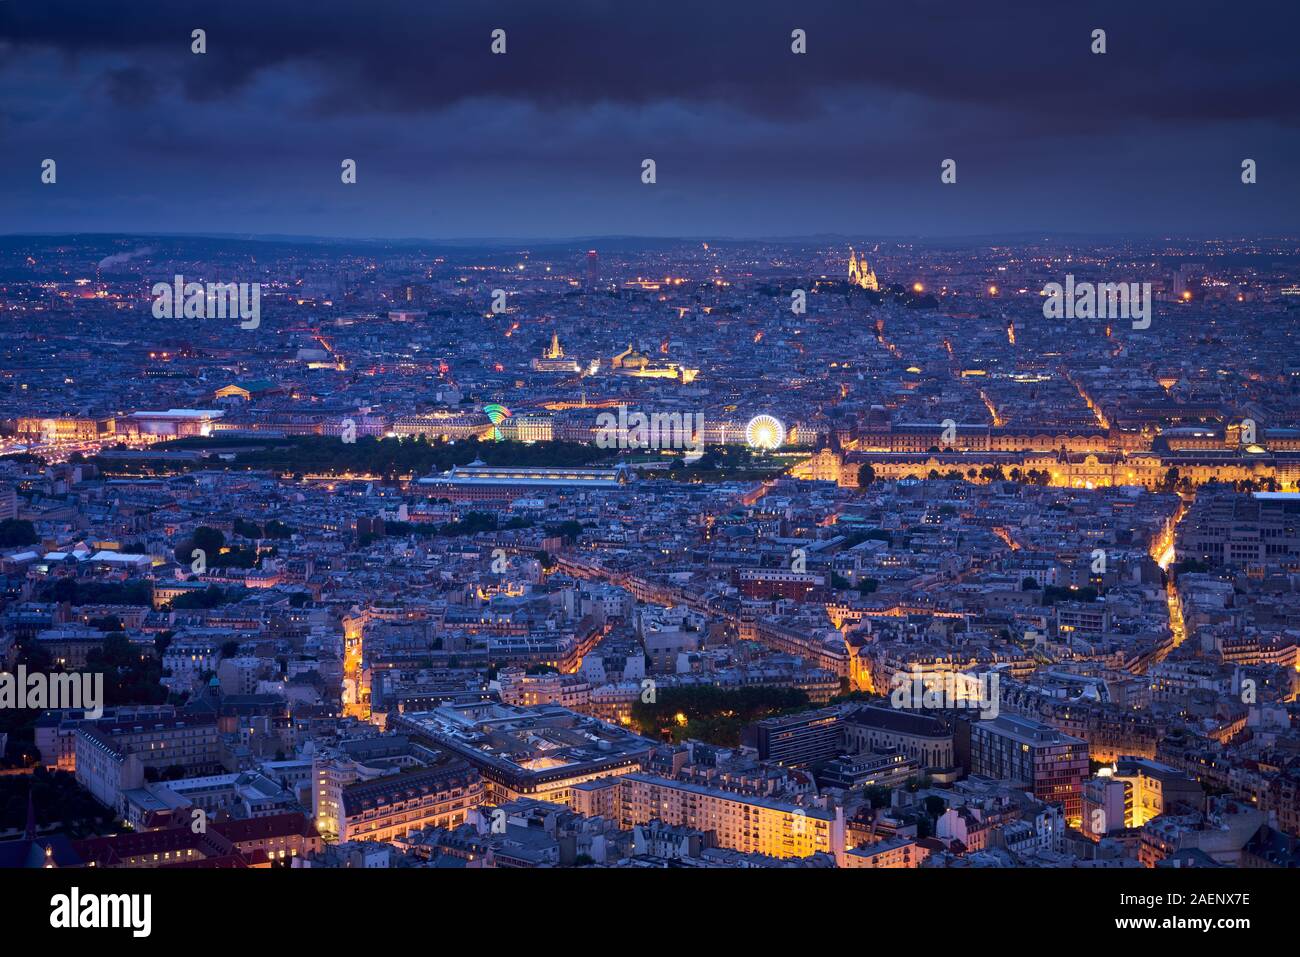 Vue aérienne de Paris au crépuscule avec le Jardin des Tuileries, Le Louvre et Montmartre Sacré-Coeur. Toits de Paris, 1ère, 7e, 18e arrondissements Banque D'Images